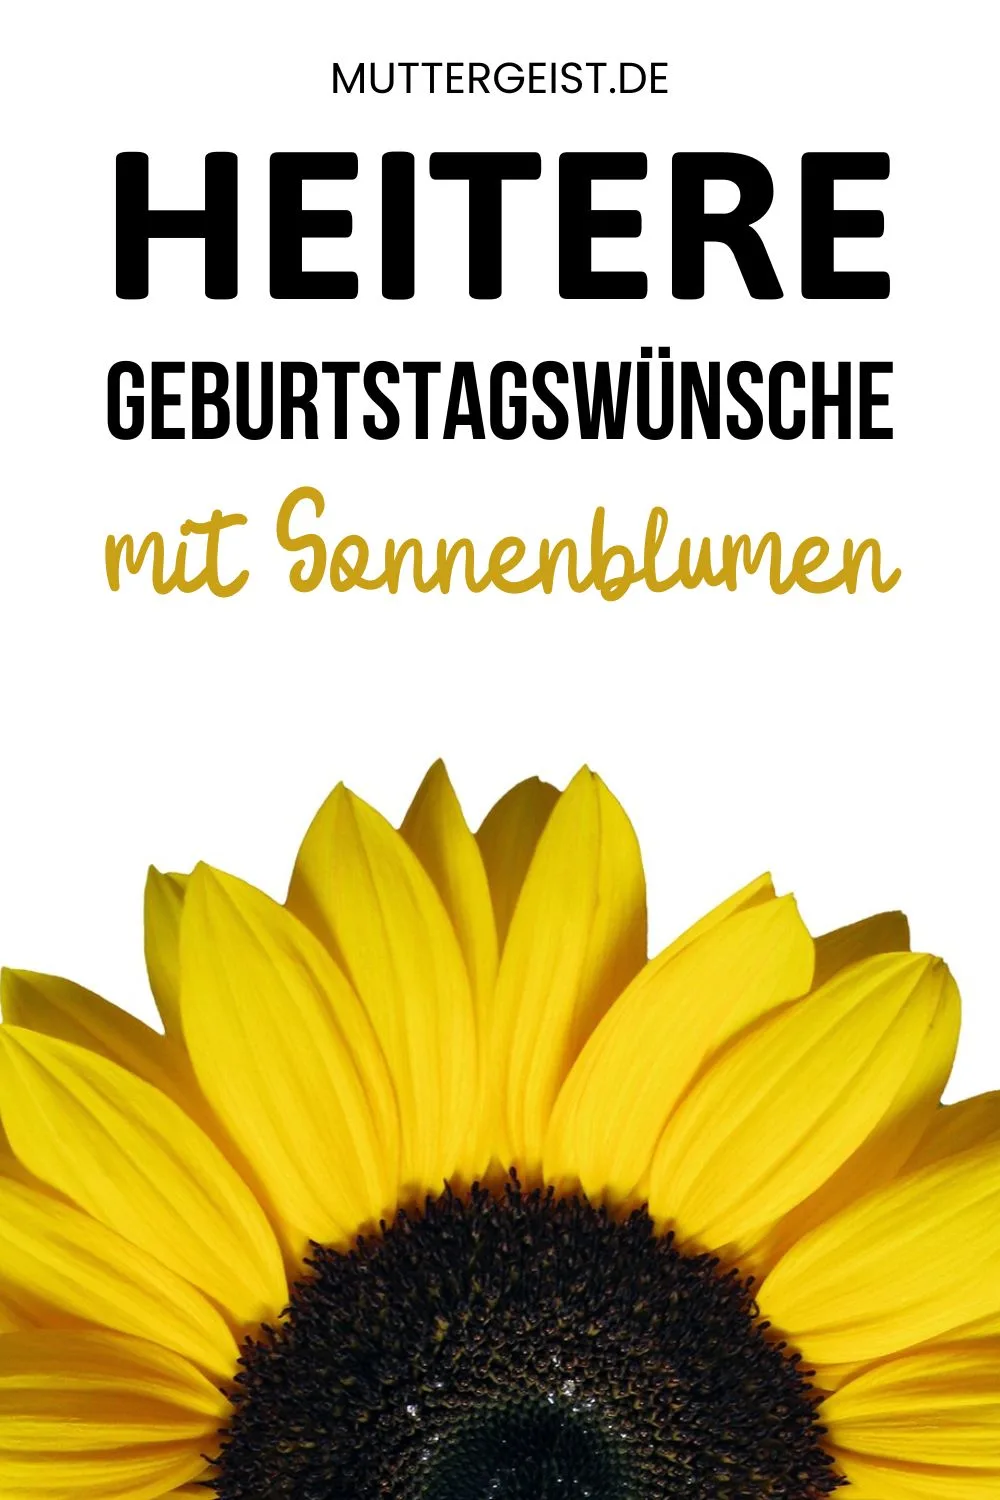 Heitere Geburtstagswünsche mit Sonnenblumen Pinterest